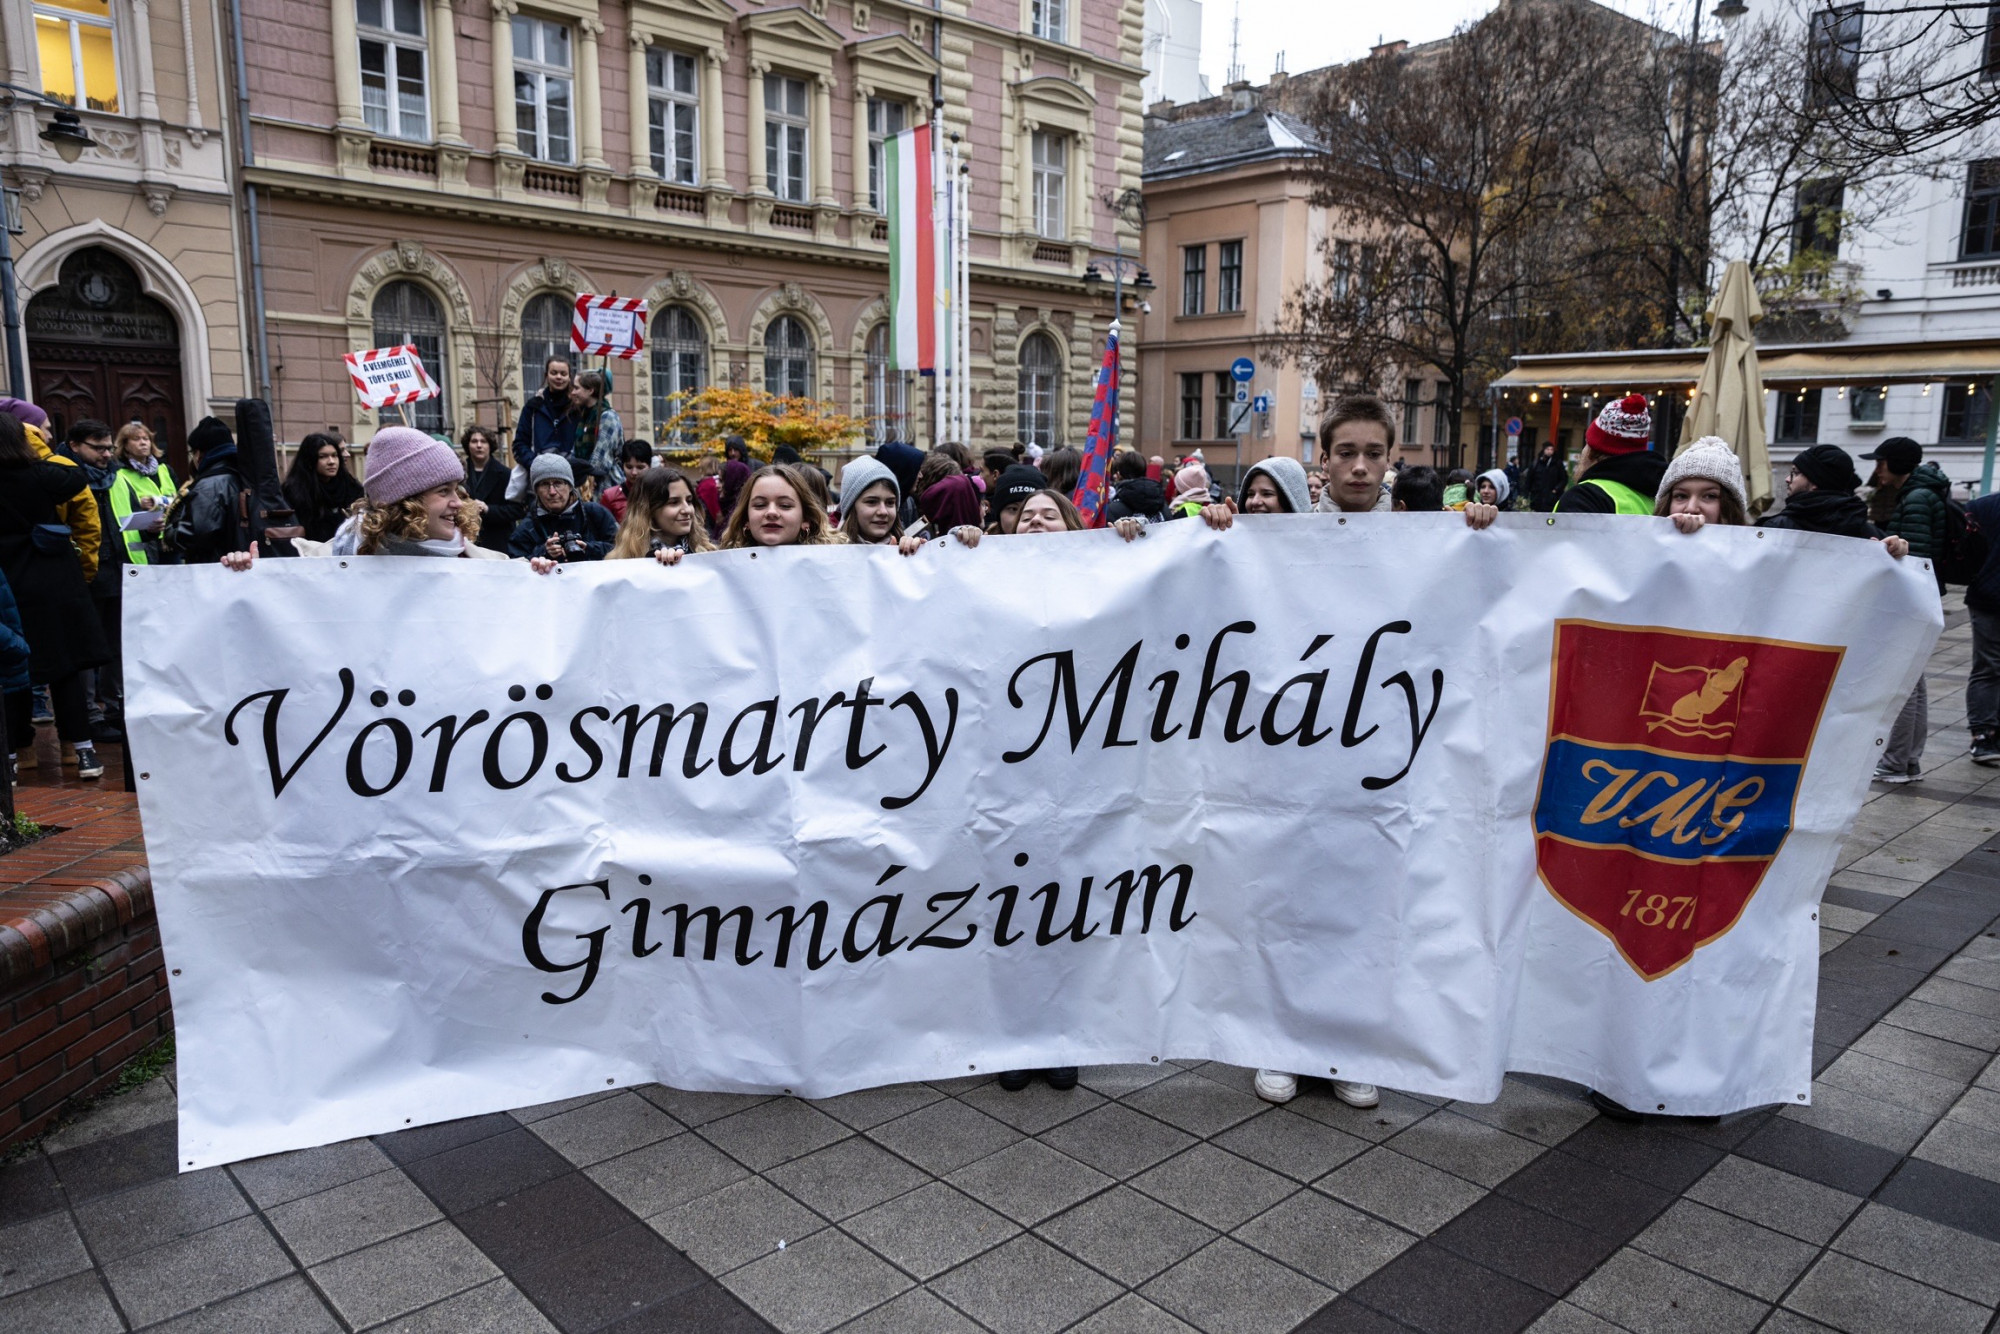 A VIII. kerületi Vörösmarty Mihály Gimnázium diákjai